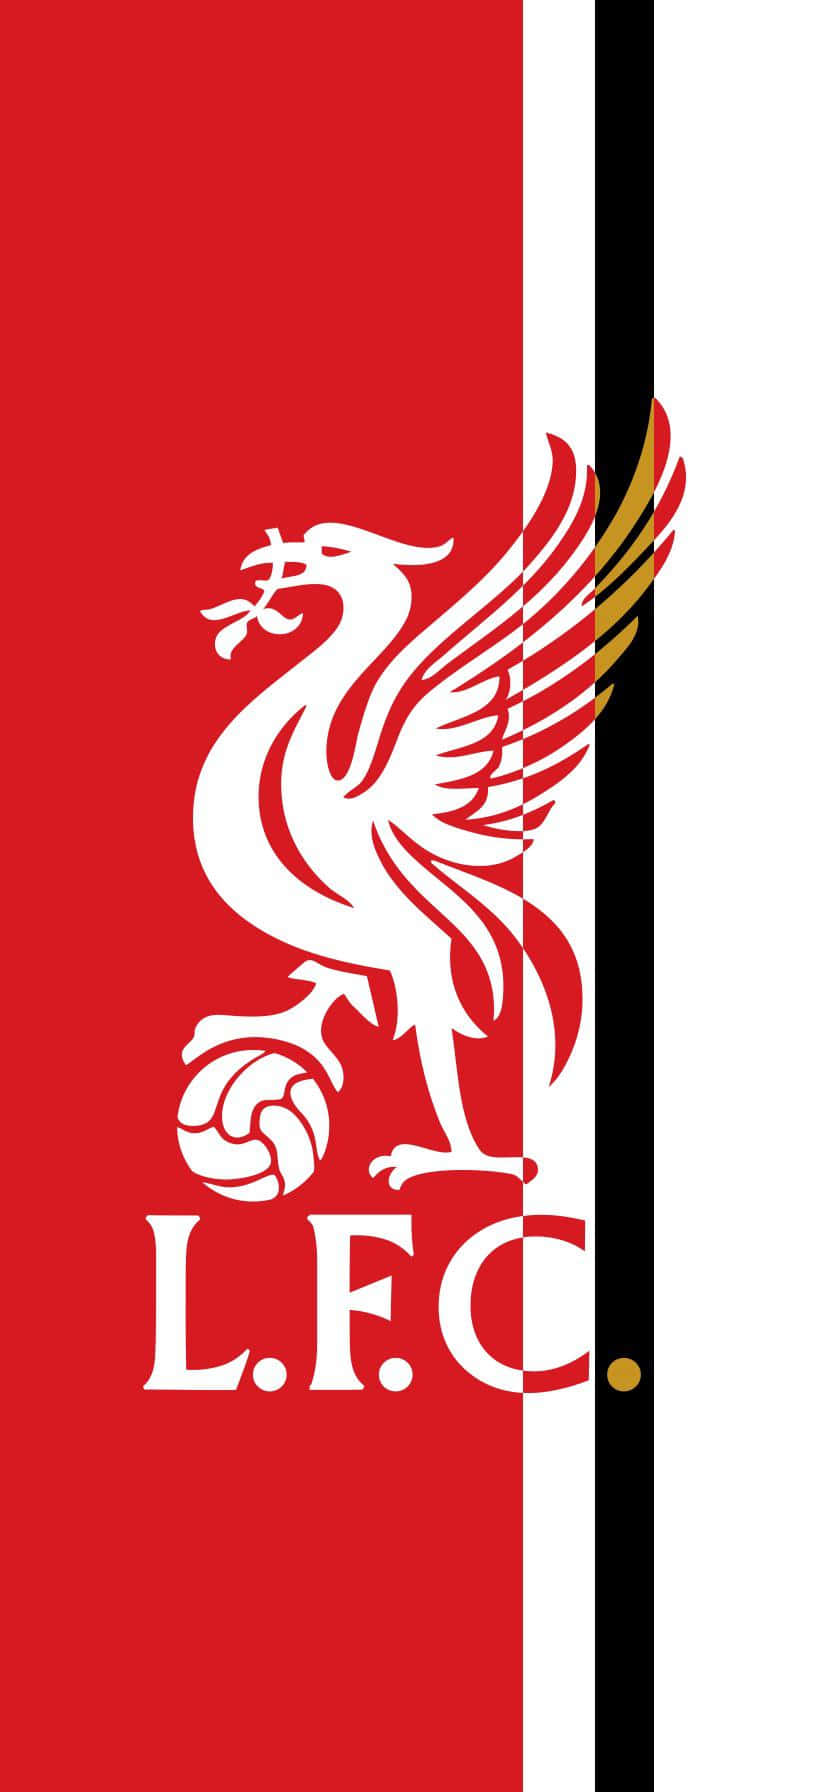 Vis din støtte til Liverpool med det perfekte tapet til din iPhone. Wallpaper